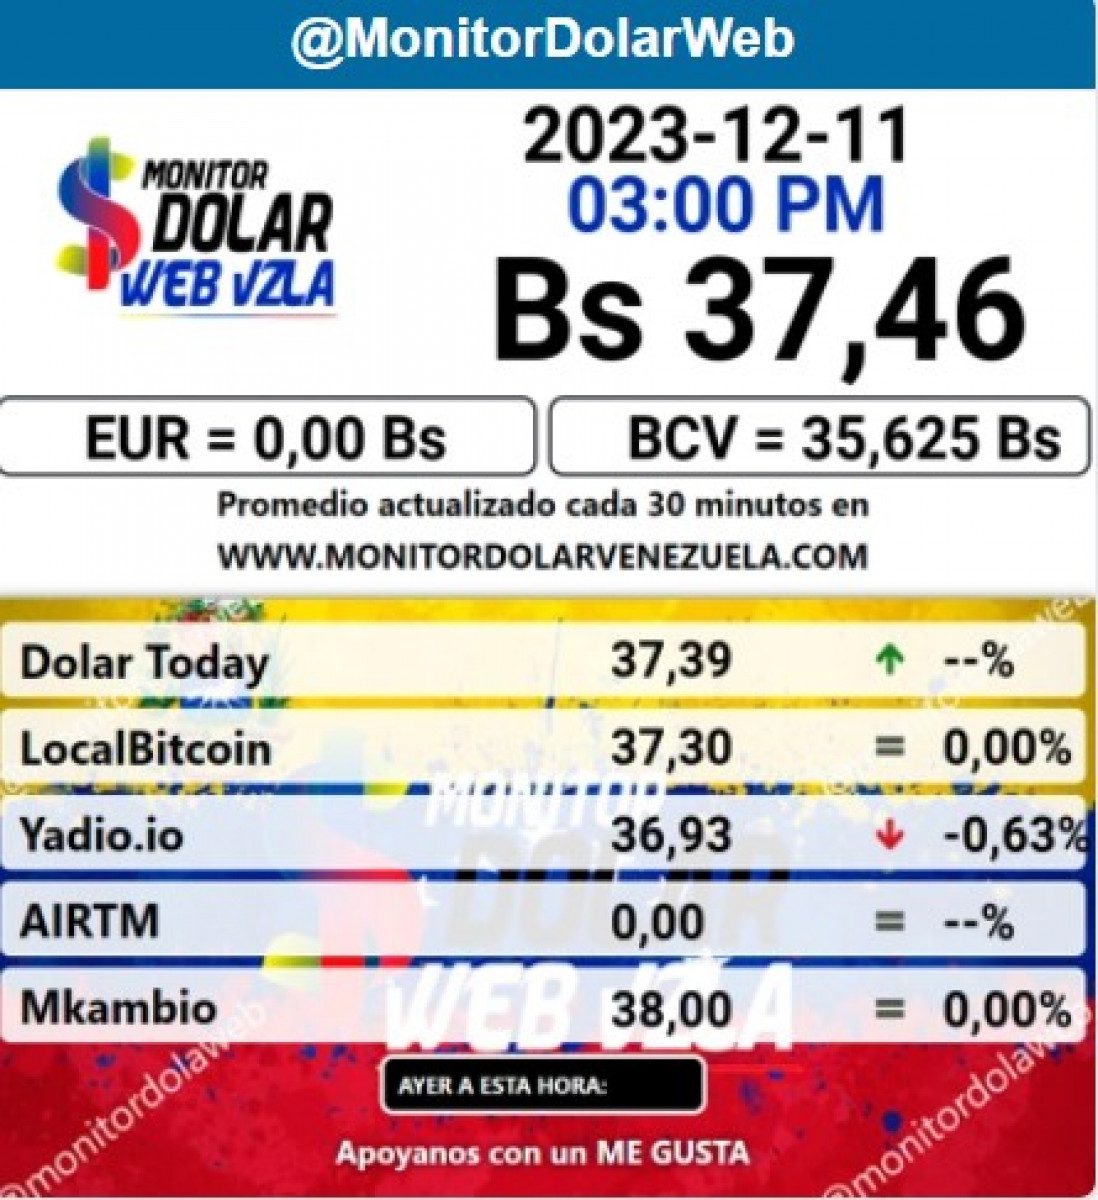 dolartoday en venezuela precio del dolar este lunes 11 de diciembre de 2023 laverdaddemonagas.com monitor nuevo8